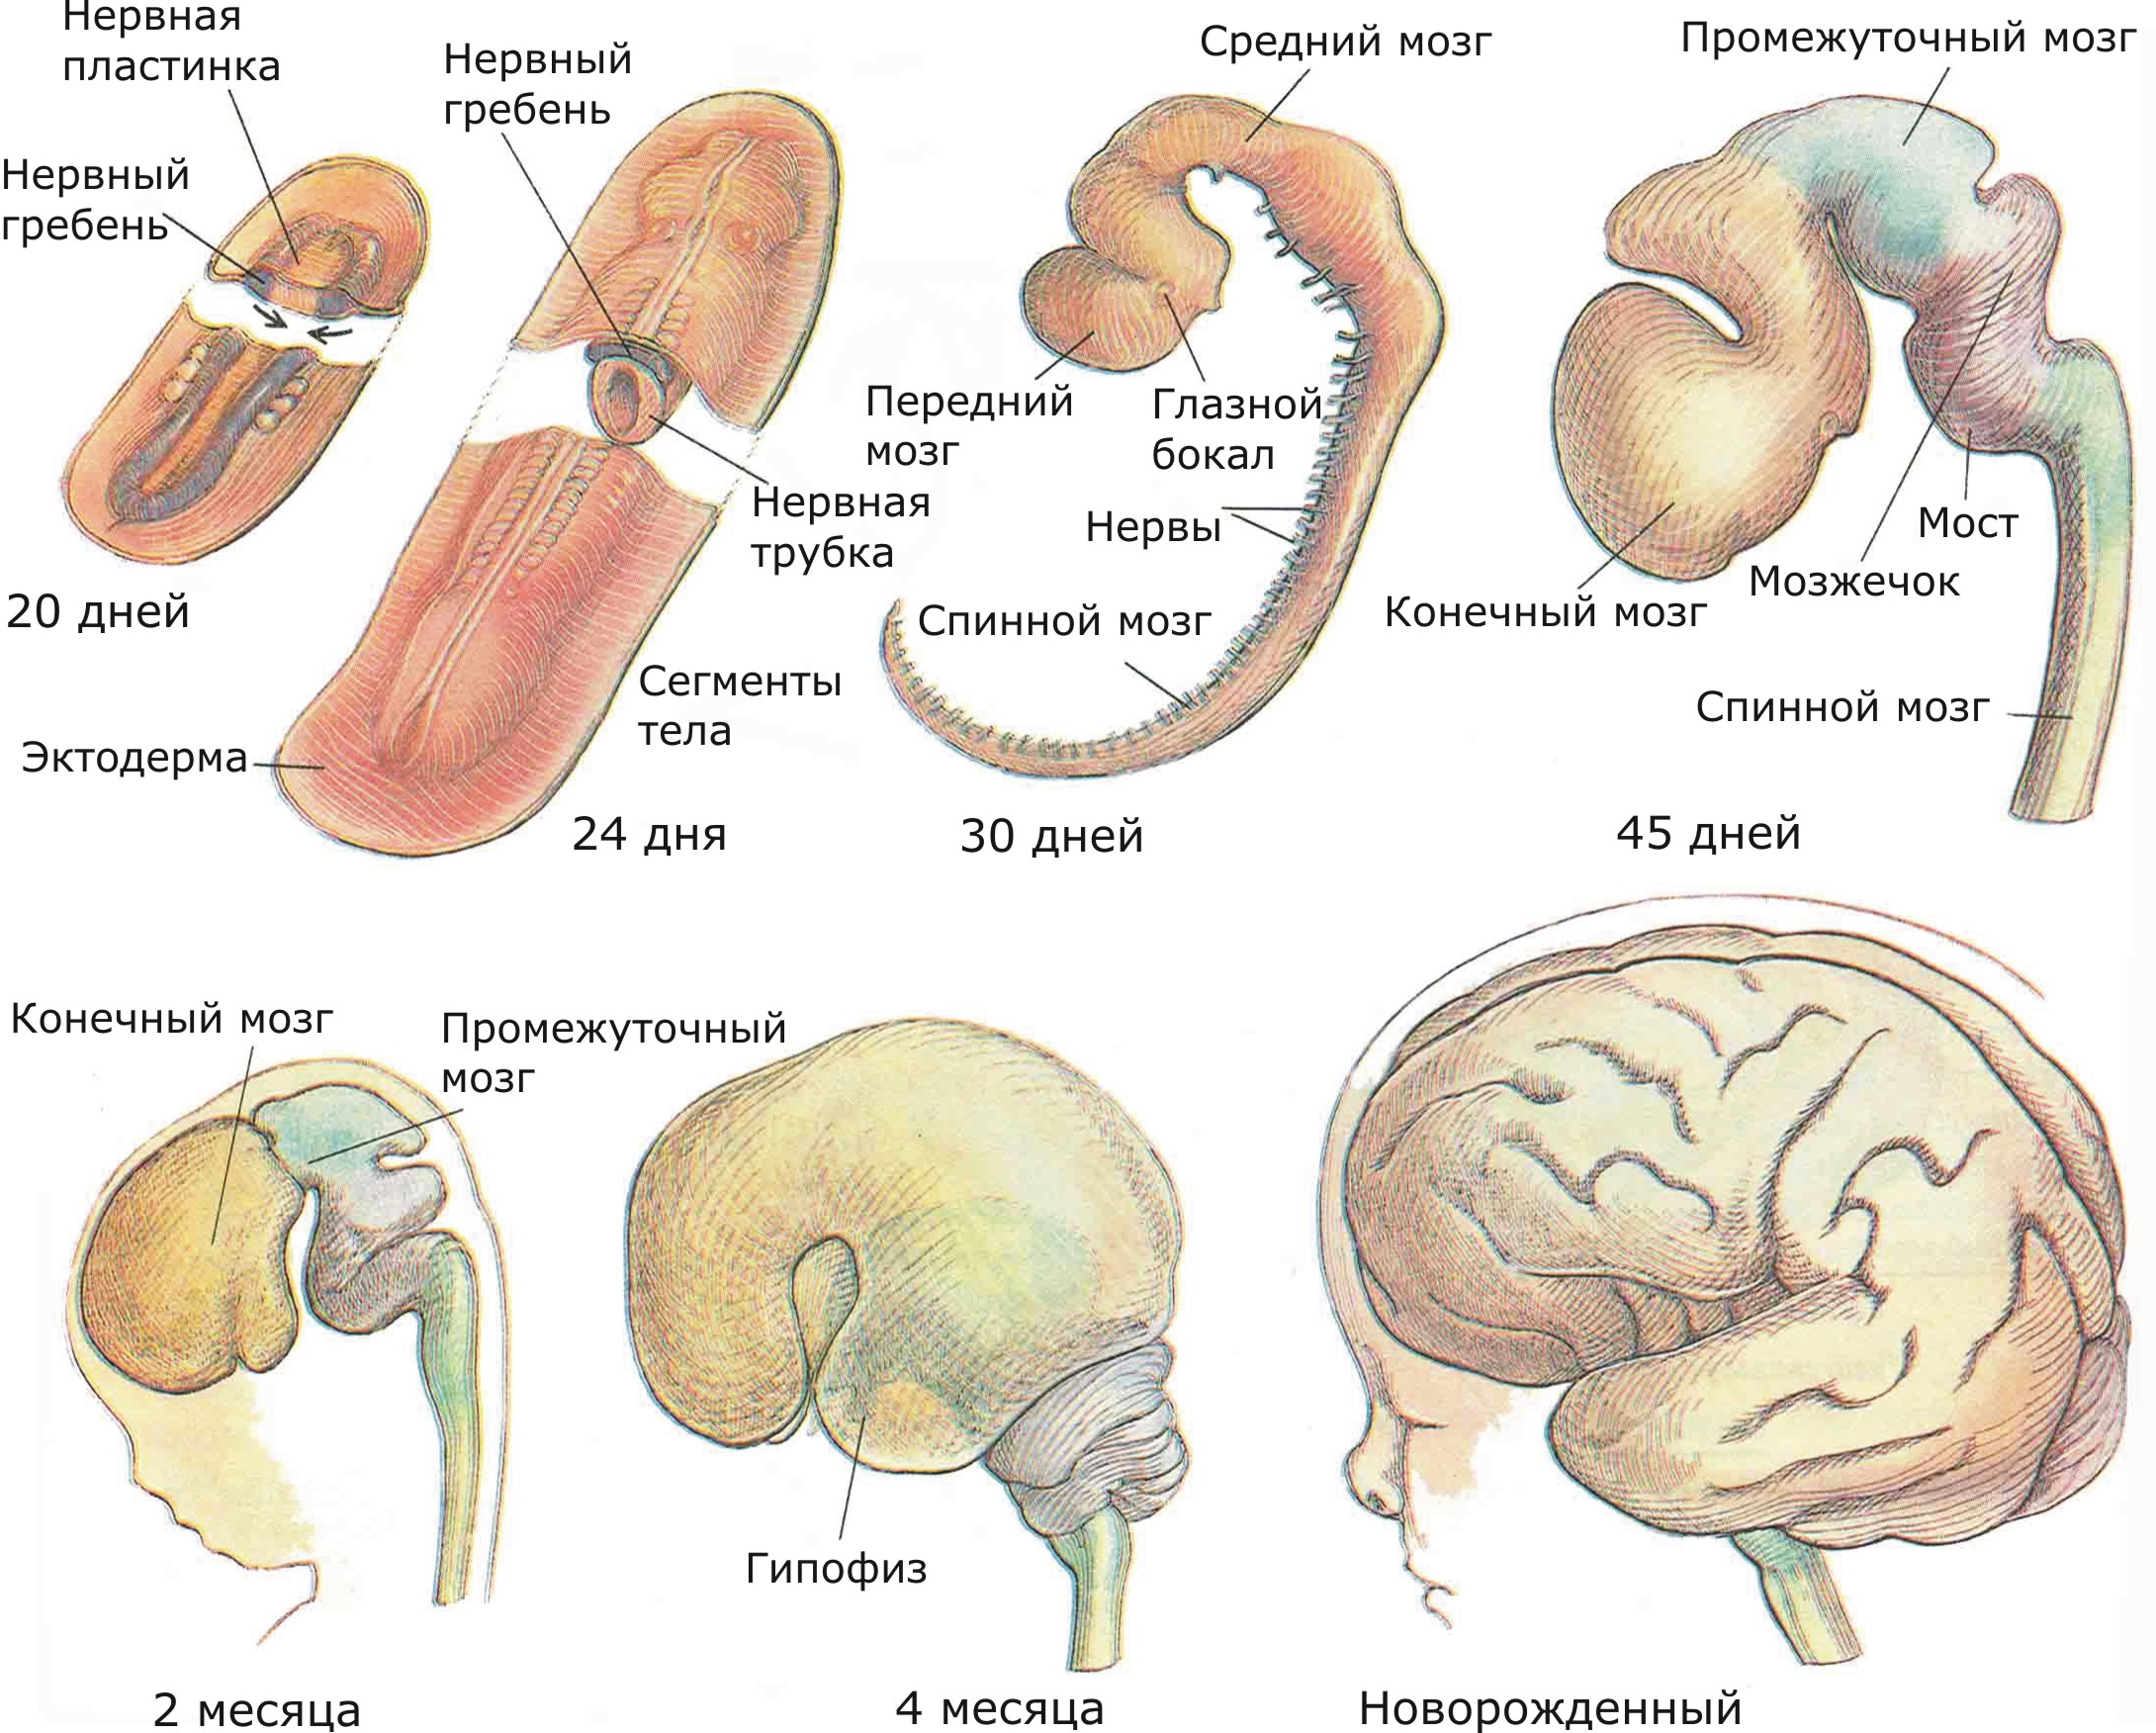 На 30-дневной стадии можно распознать основные отделы мозга, хотя и в зачаточной форме. К двум месяцам достаточно развита и большая часть подкорковых структур. Кора больших полушарий и мозжечка продолжает развиваться на протяжении всего внутриутробного периода и даже после рождения